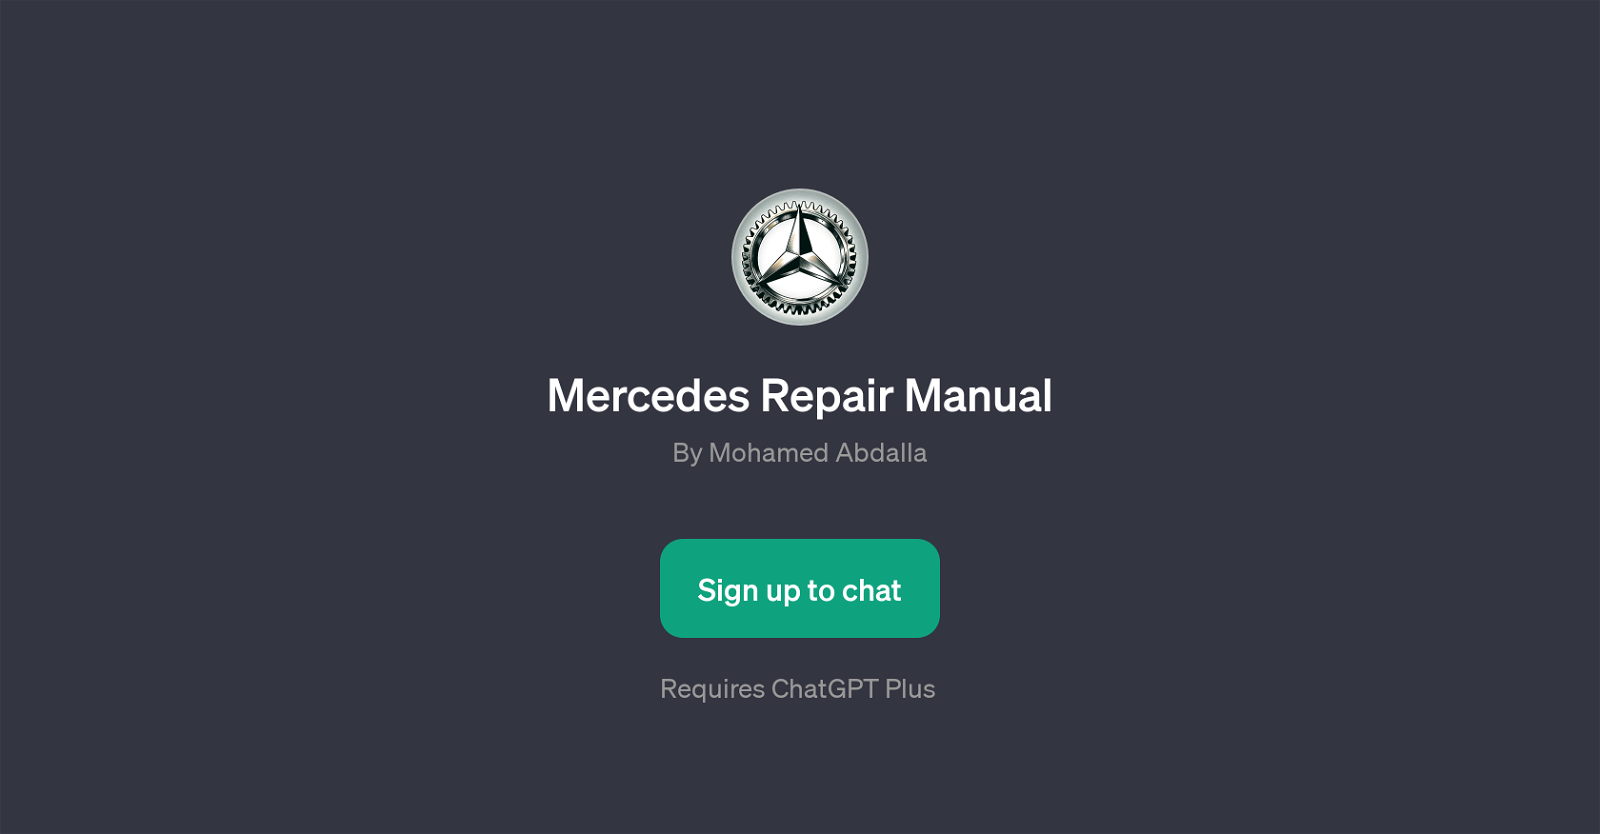 Mercedes Repair Manual website